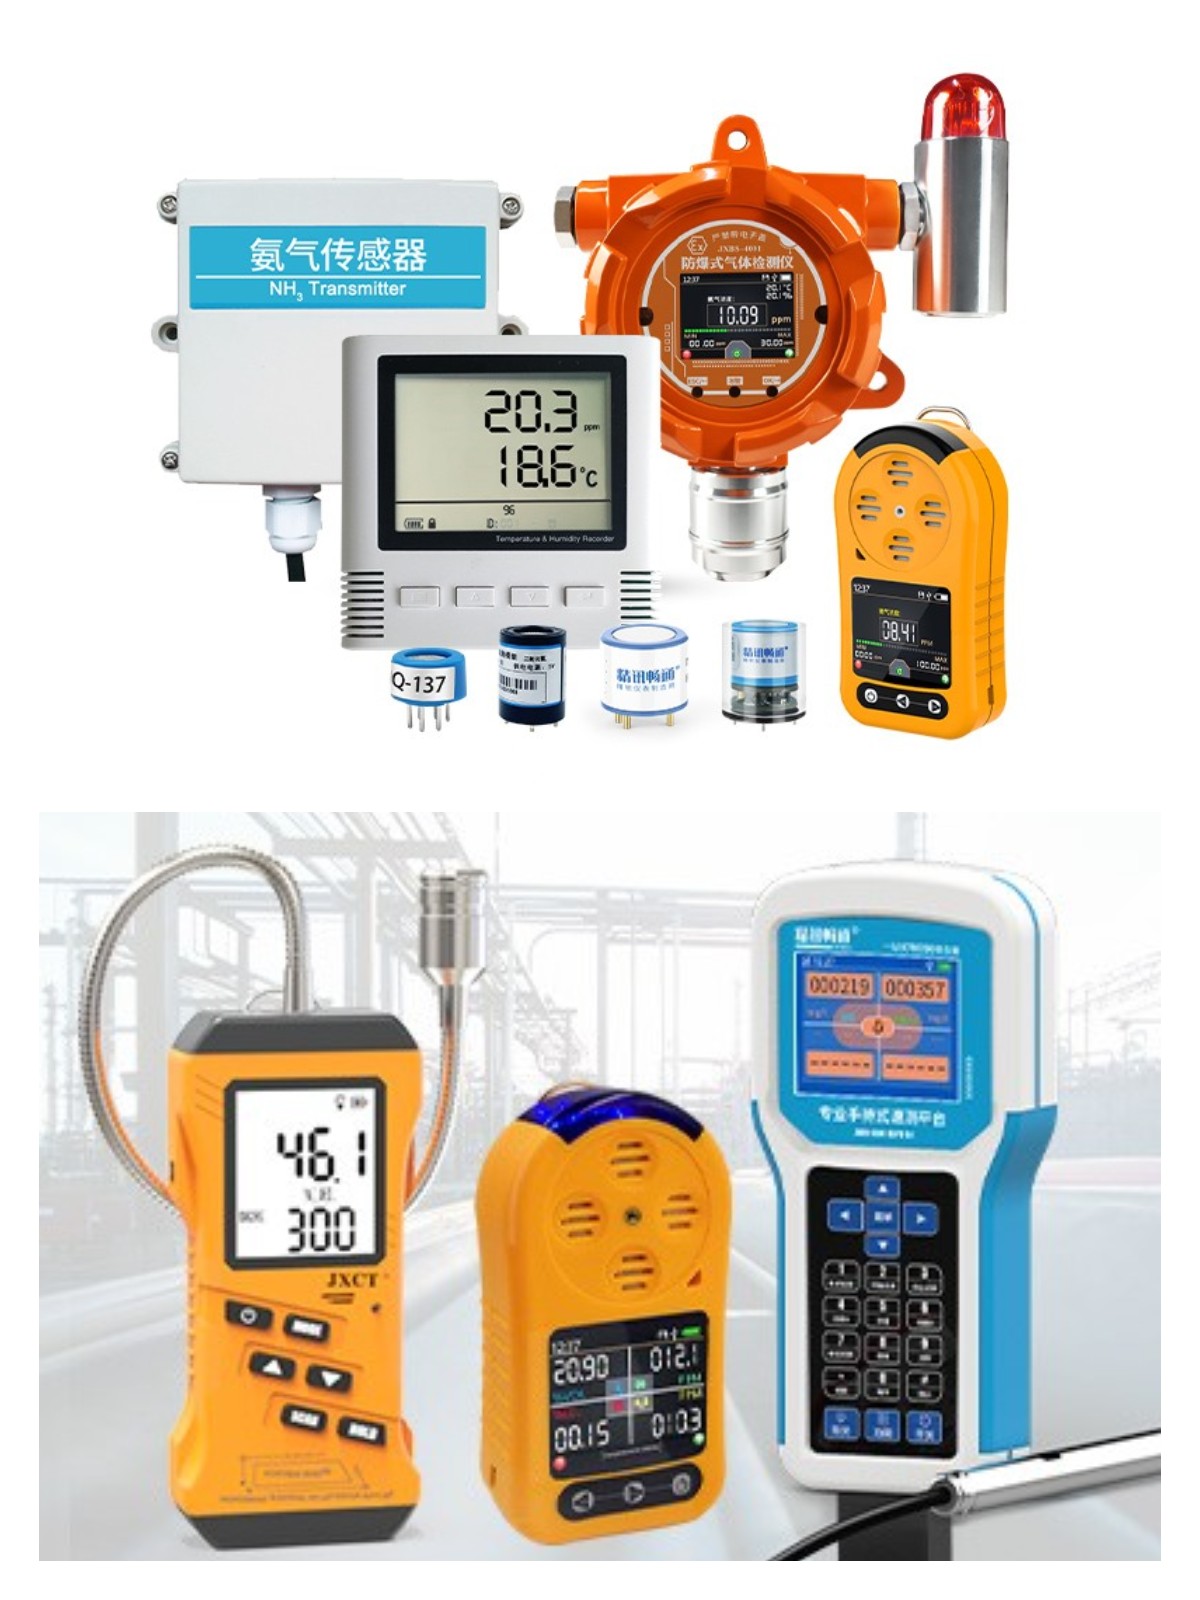 The best gas sensor - Gas Sensor|Gas Detector|Manufacturer Supplier-JXCT